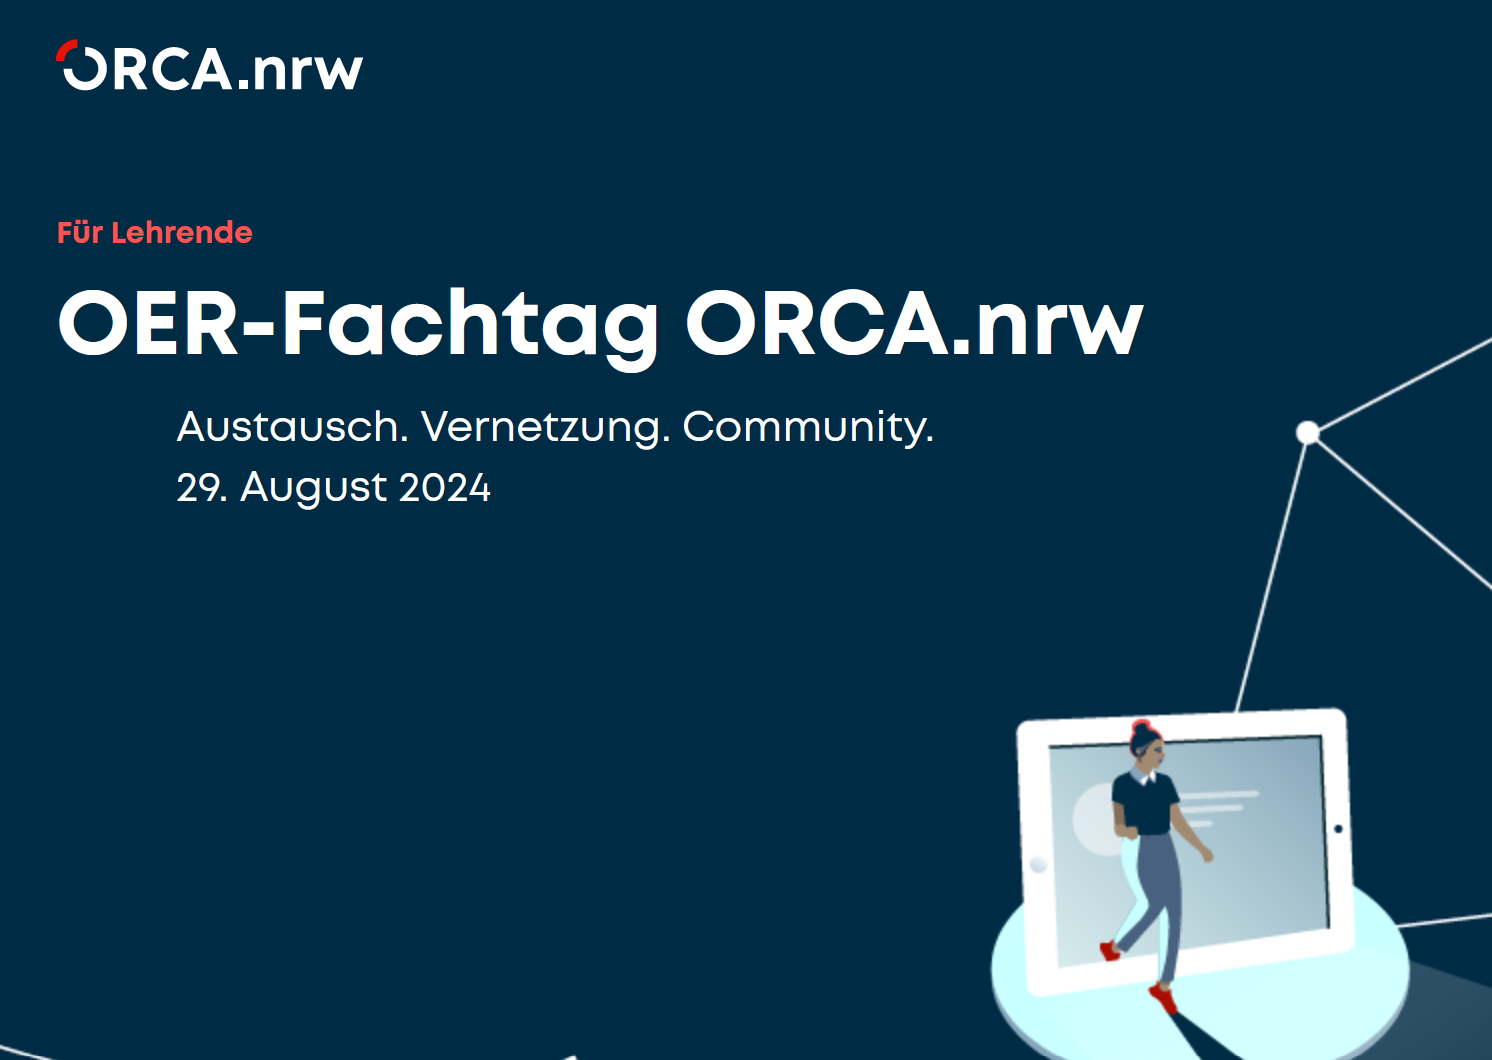 OER-Fachtag ORCA.nrw am 29. August 2024